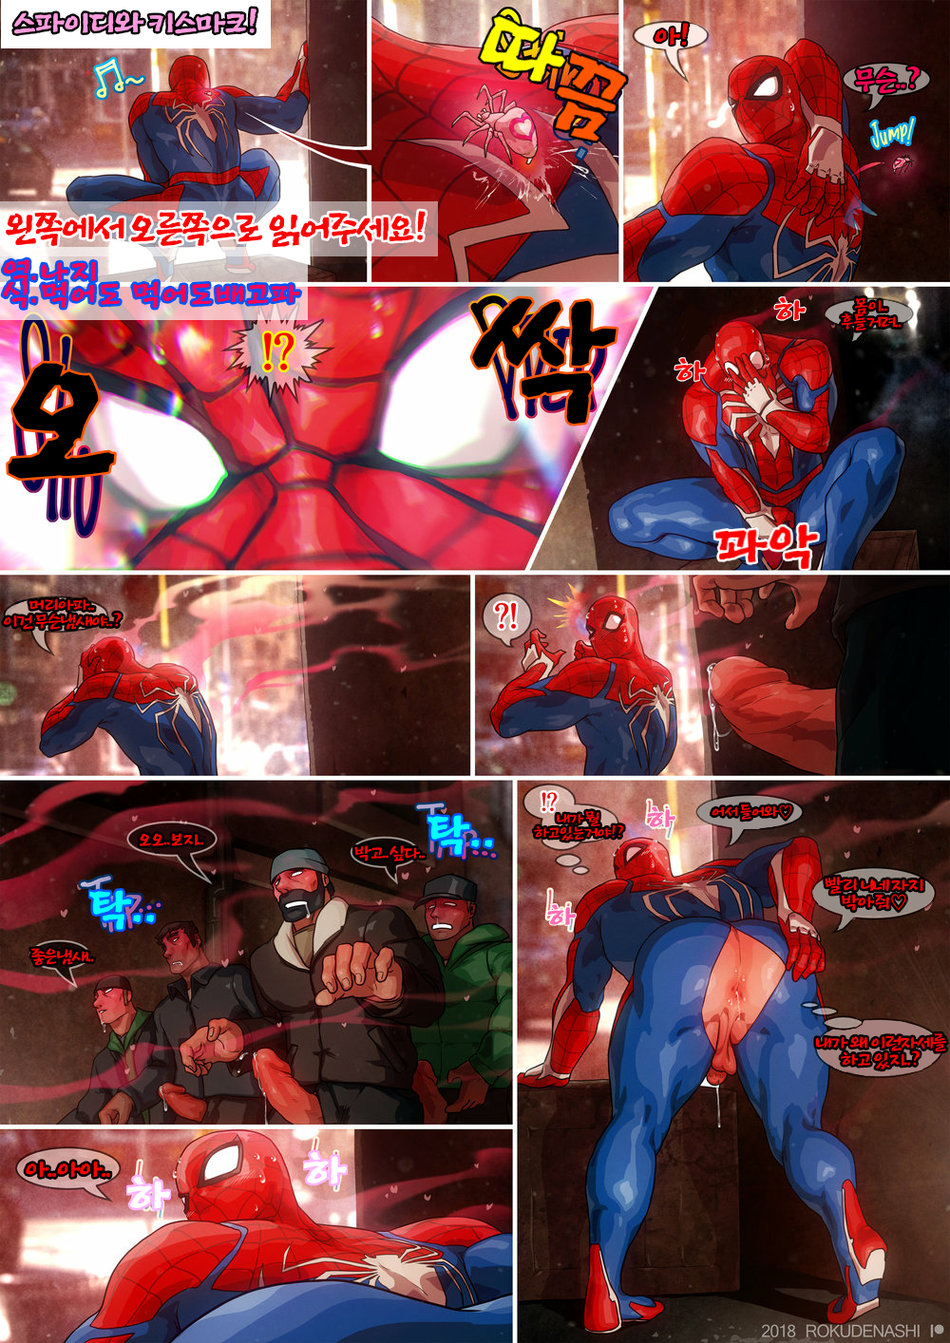 spiderman gay porn comics